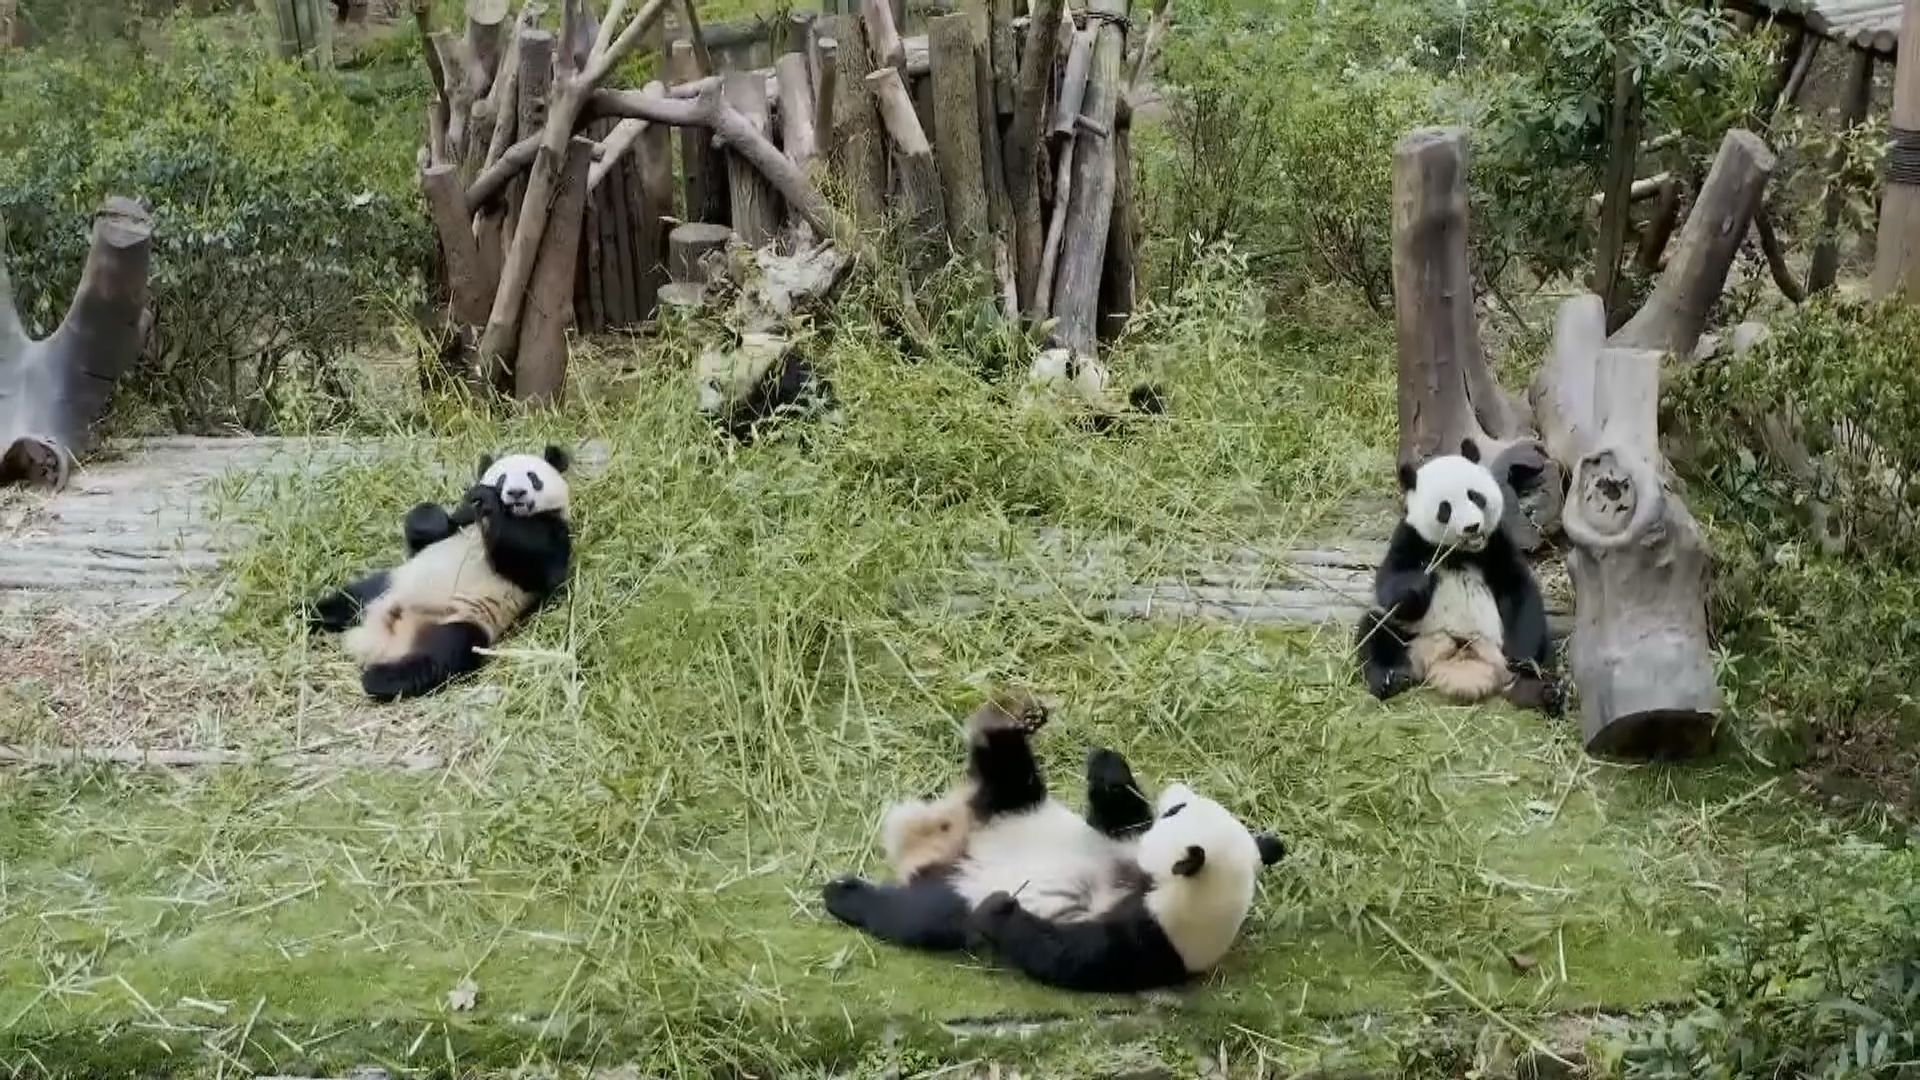 成都熊貓基地大熊貓數量近30年增12倍